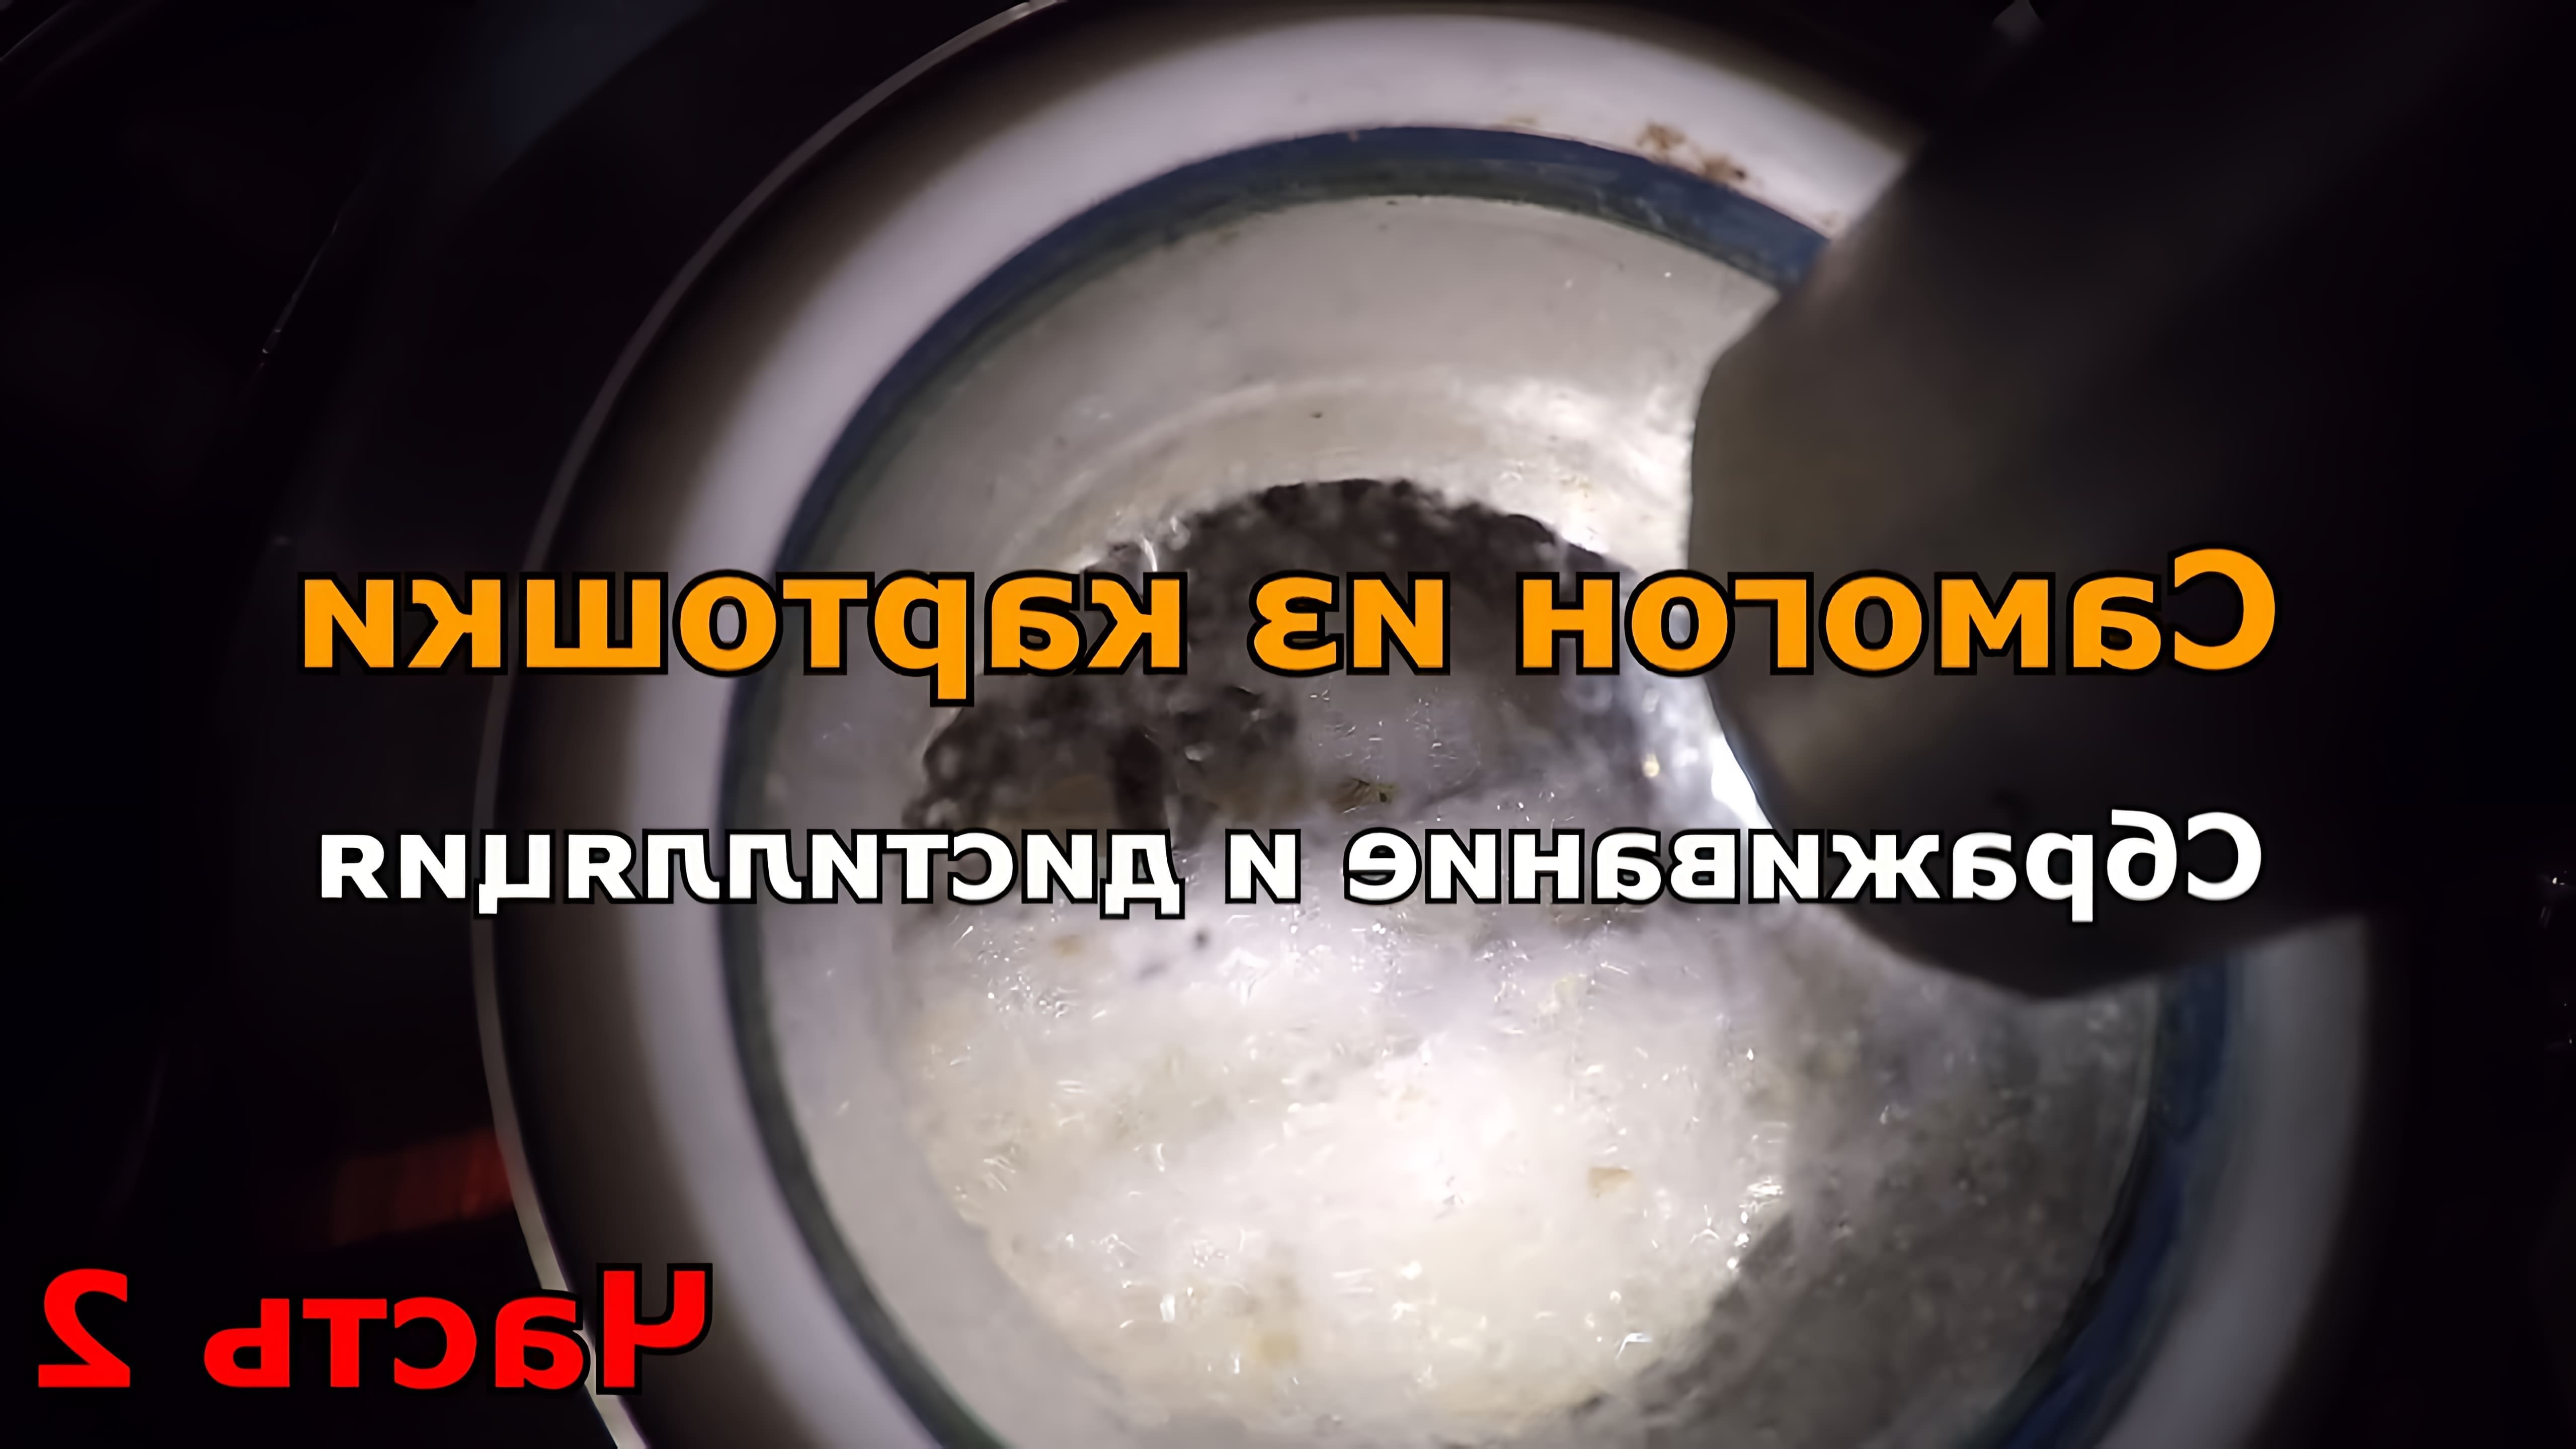 В этом видео рассказывается о процессе изготовления водки из картофеля